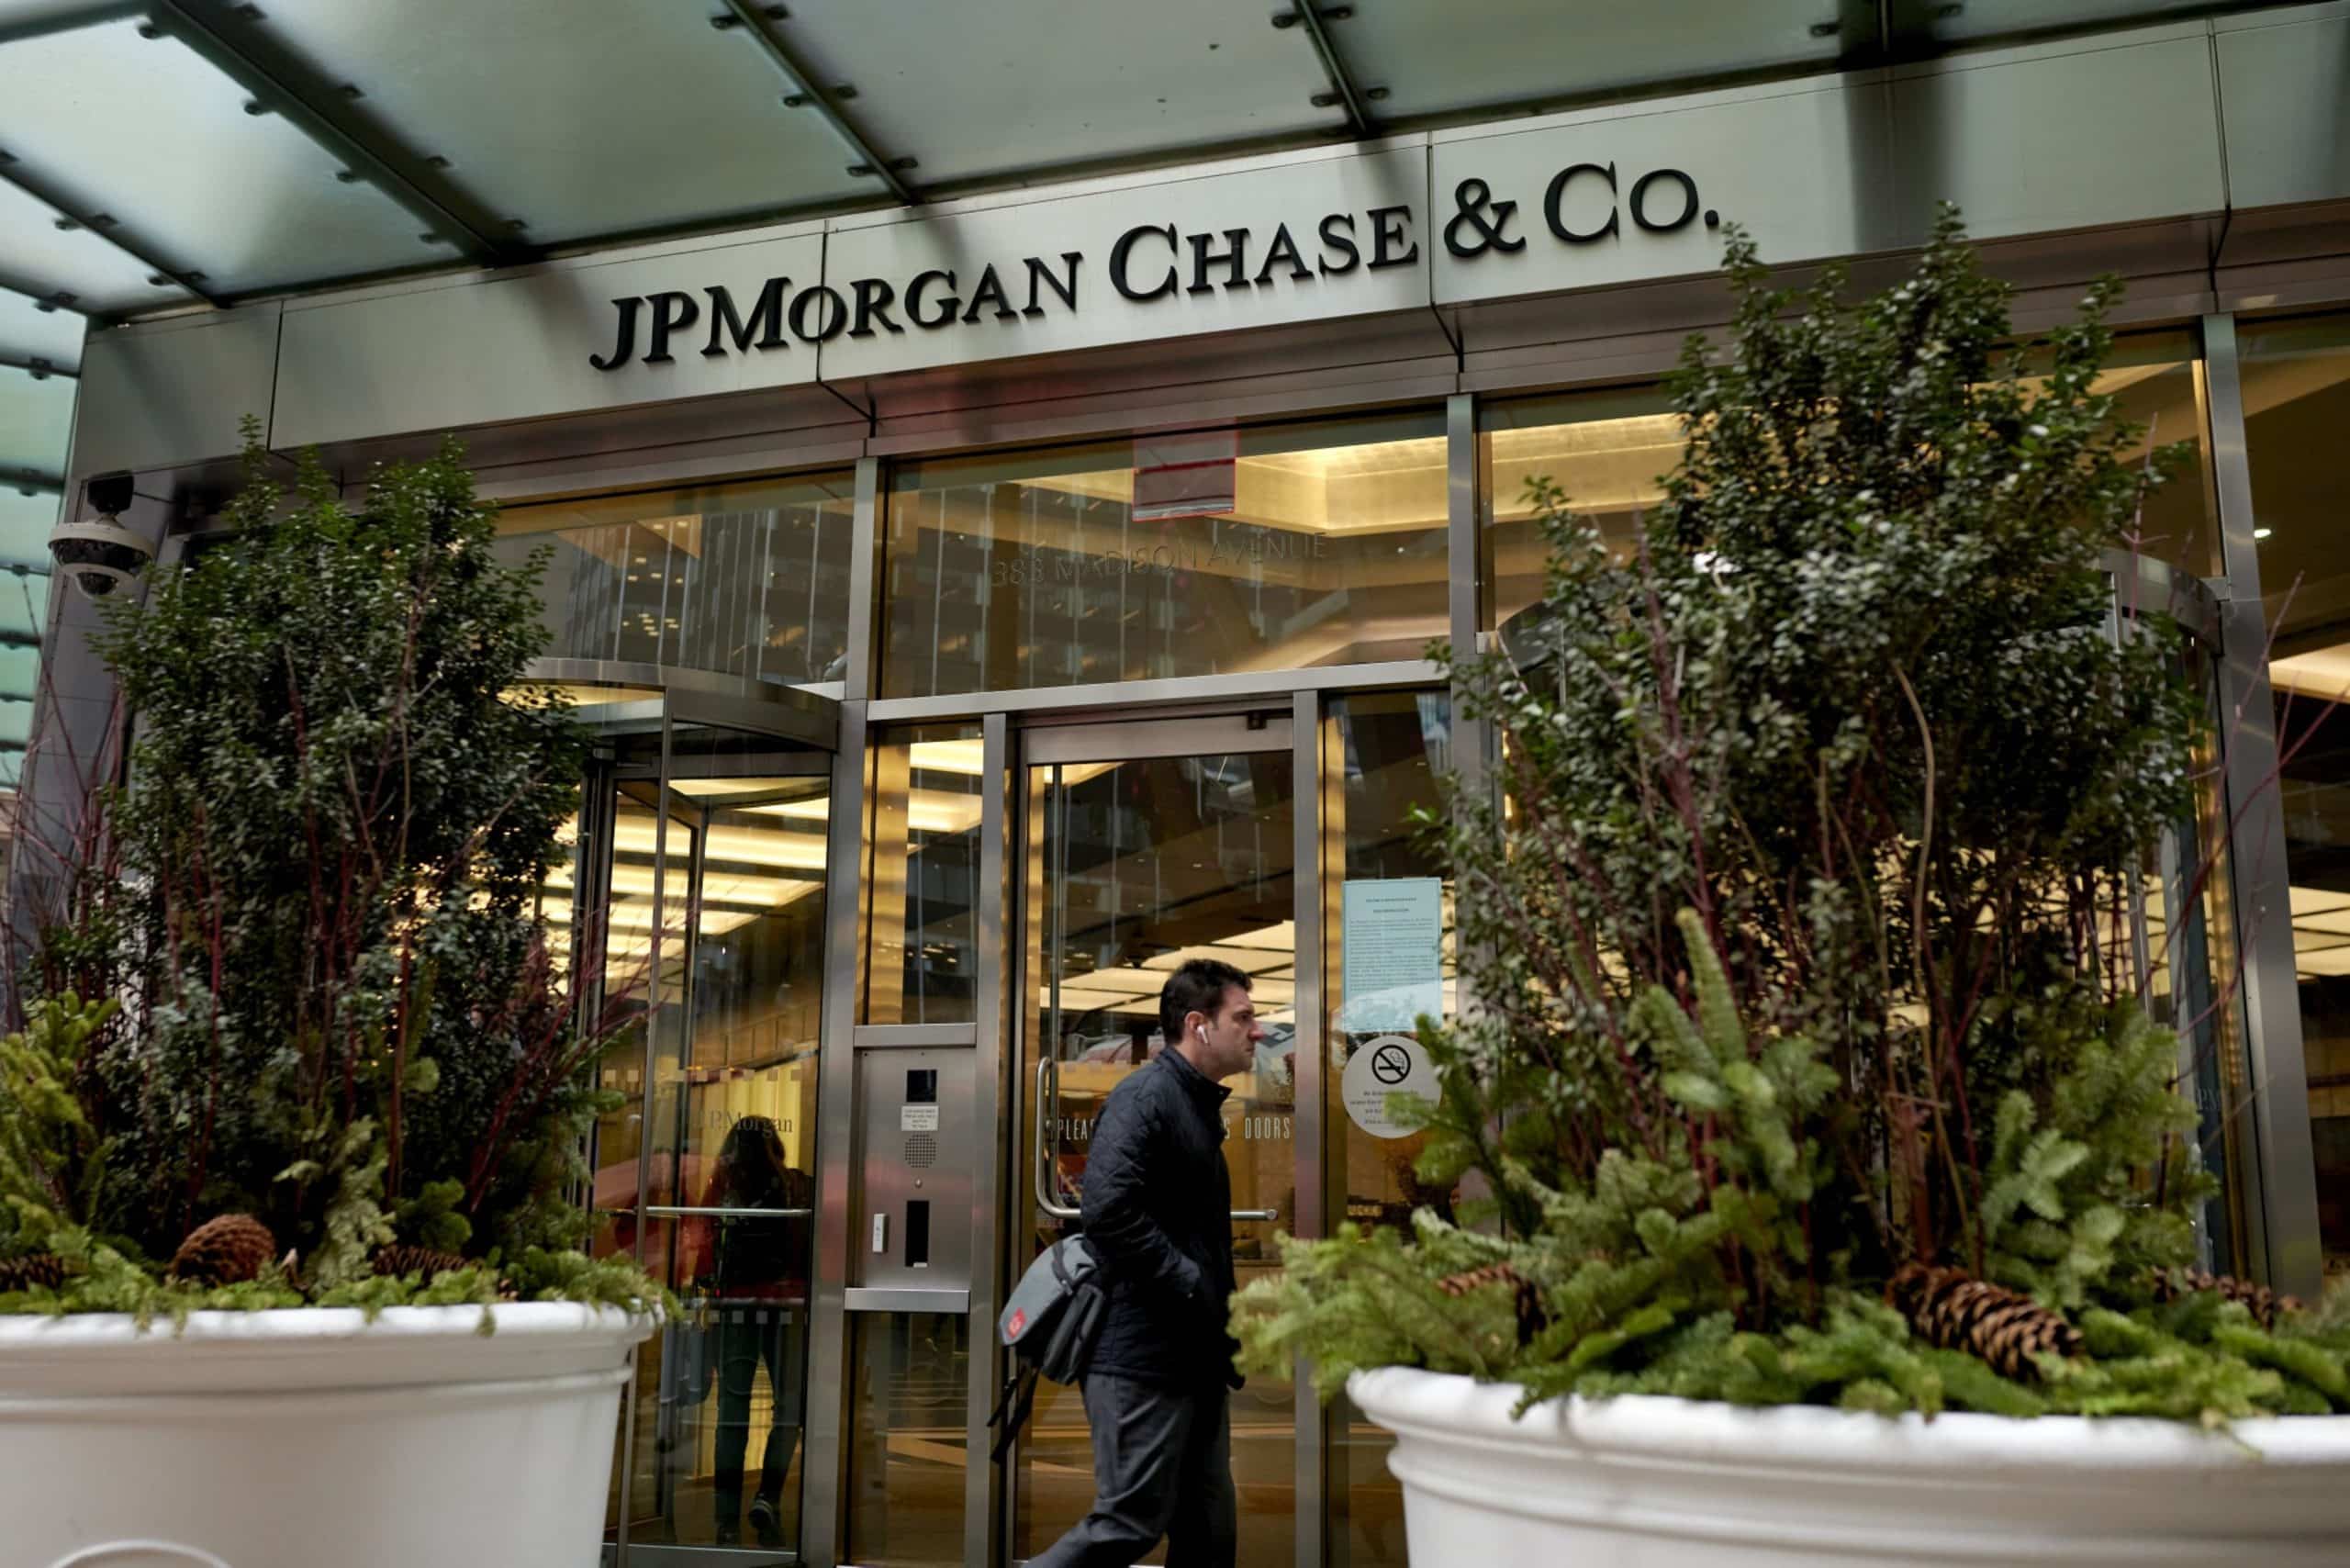 ההוצאה הטכנולוגית של JPMorgan Chase יורדת ב-7% בשנה ל-2.1 מיליארד דולר